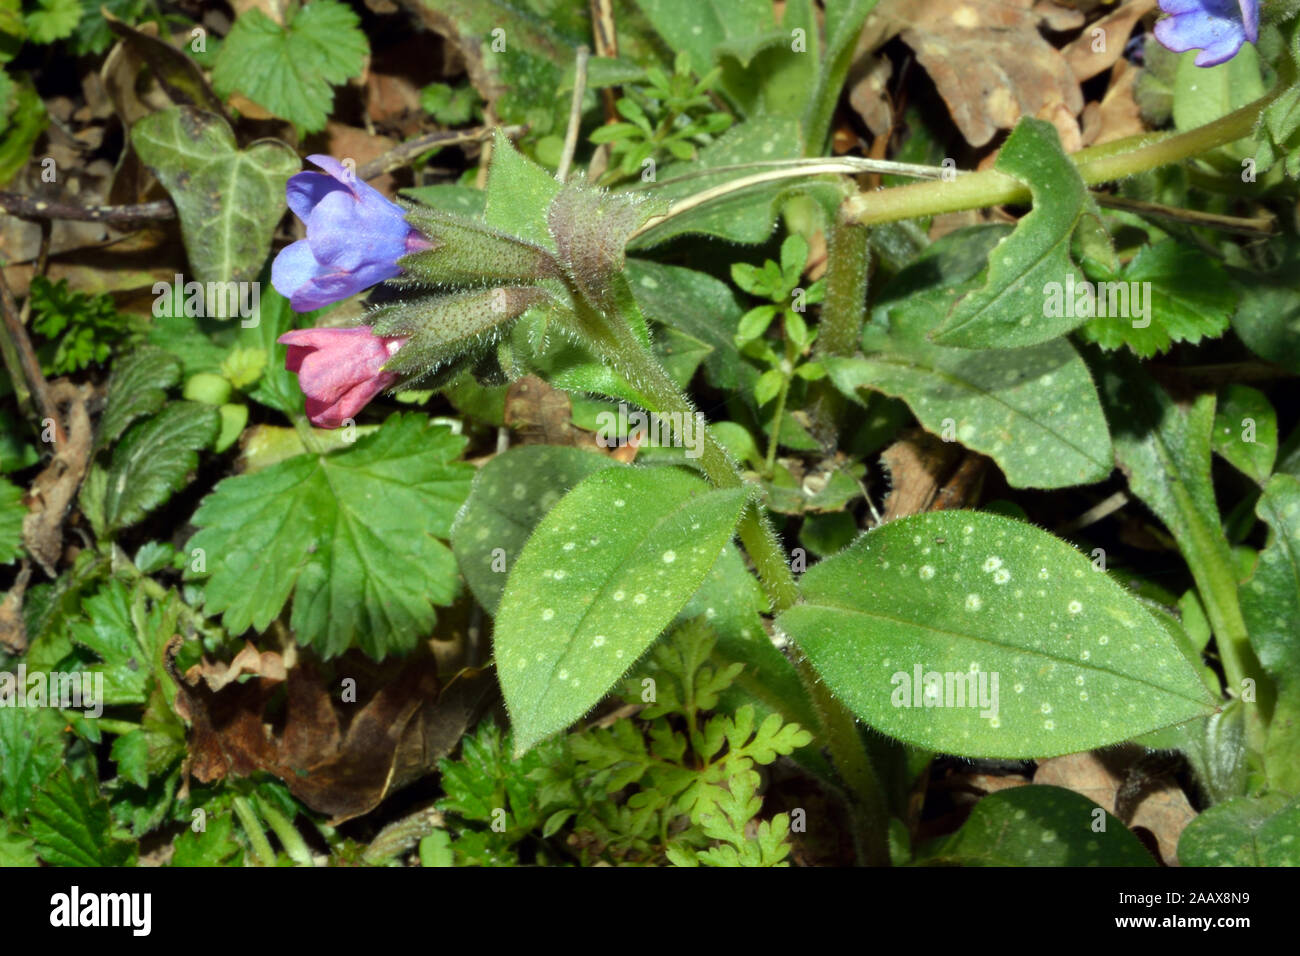 Pulmonaria officinalis (herbe) est considéré comme l'un des plus répandus en Europe. Il se produit dans les forêts mixtes de feuillus et de hêtre. Banque D'Images